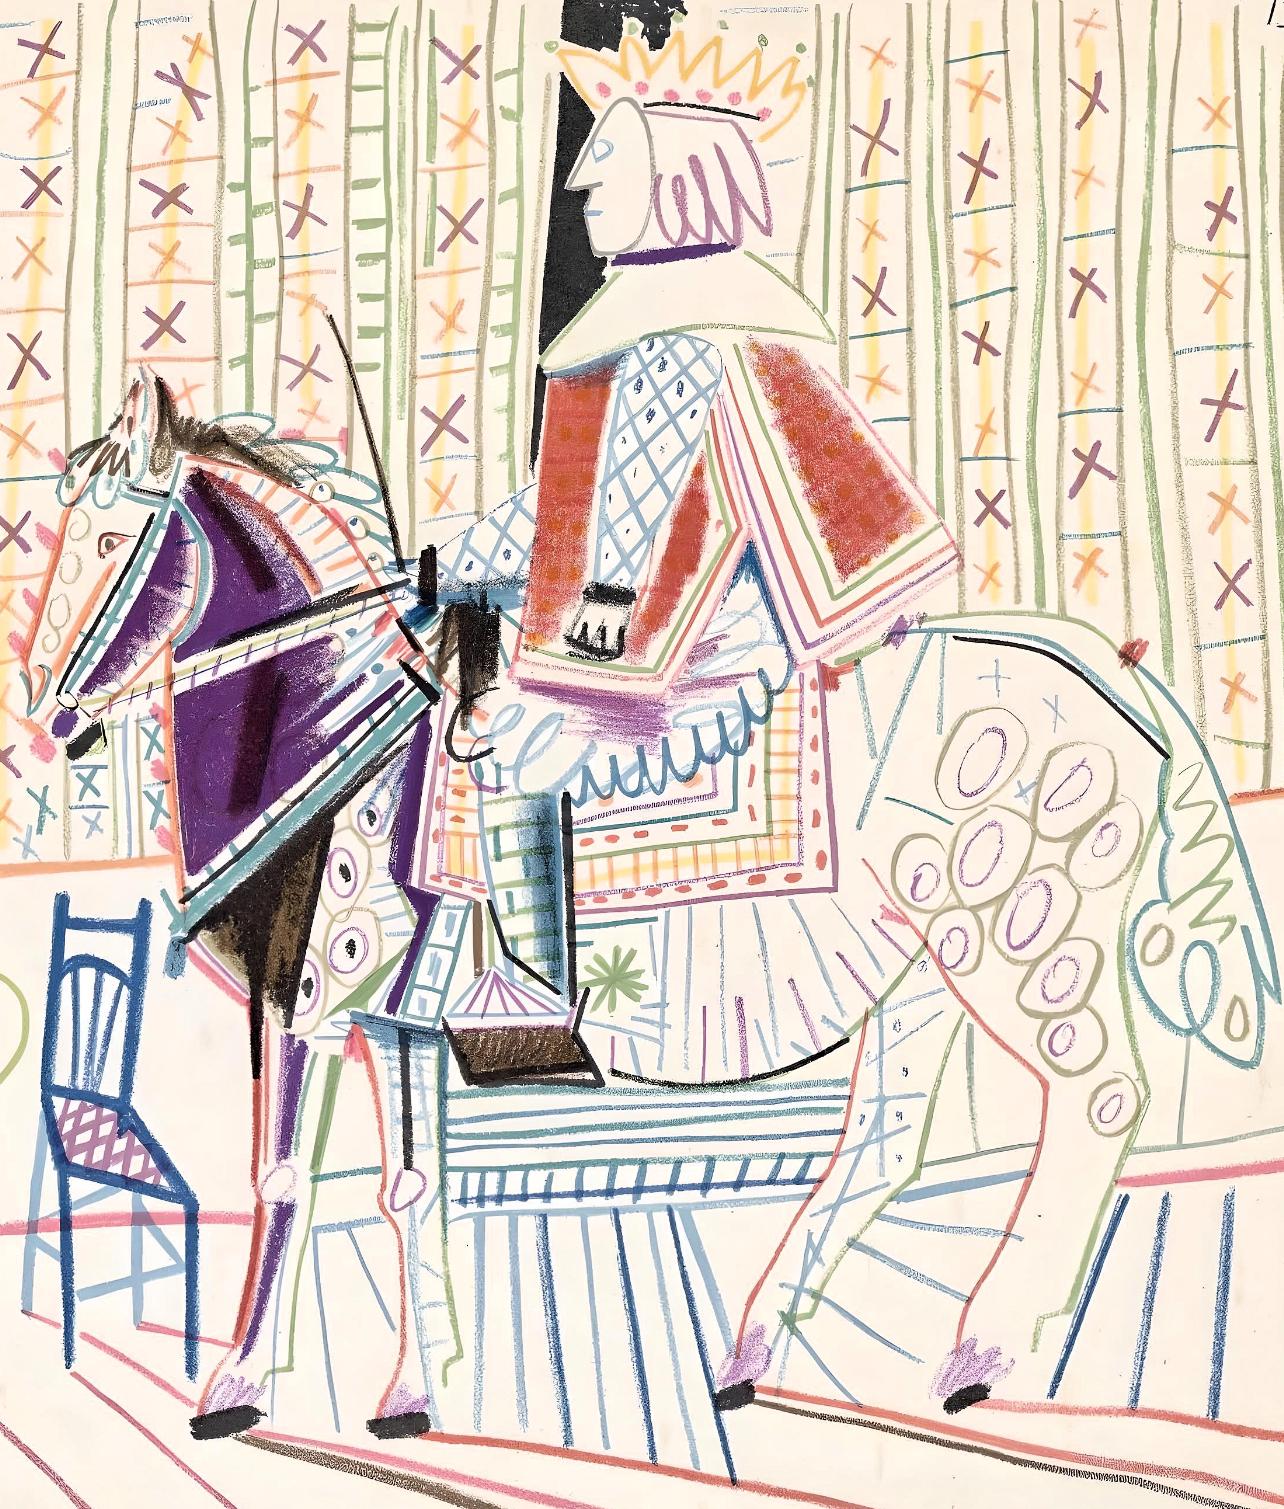 Picasso, Composition, La Comédie Humaine (after) - Print by Pablo Picasso